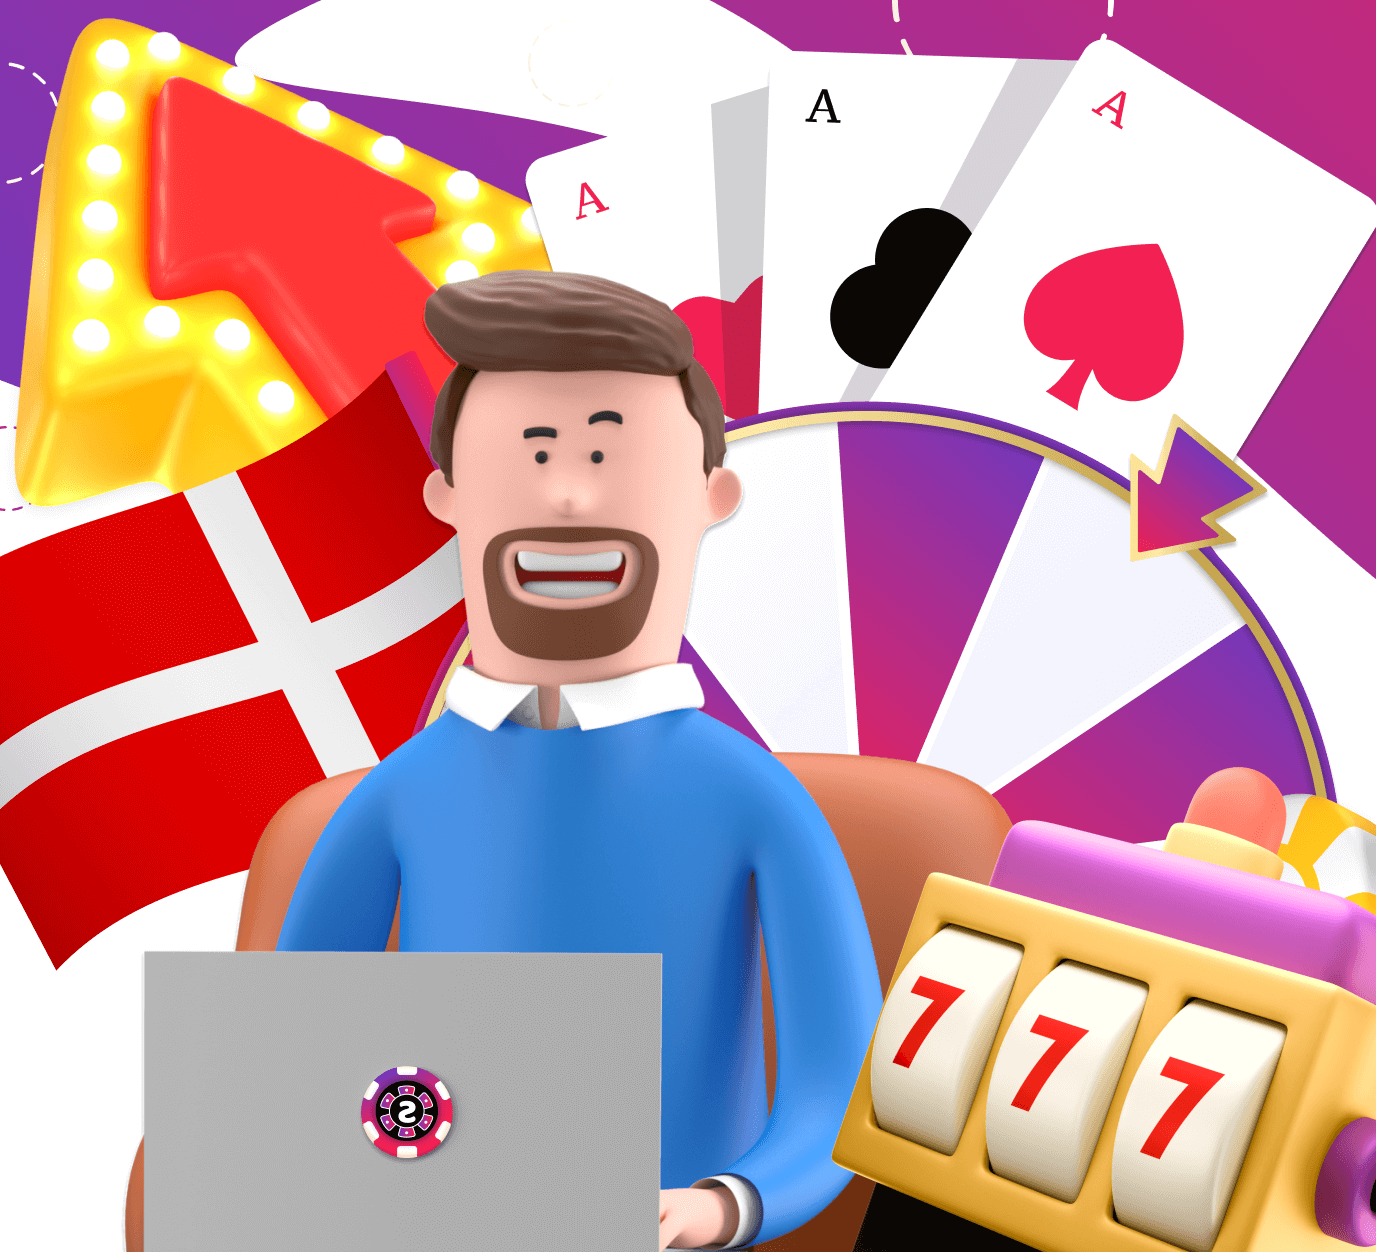 Spilleautomater er det mest populære casino spil